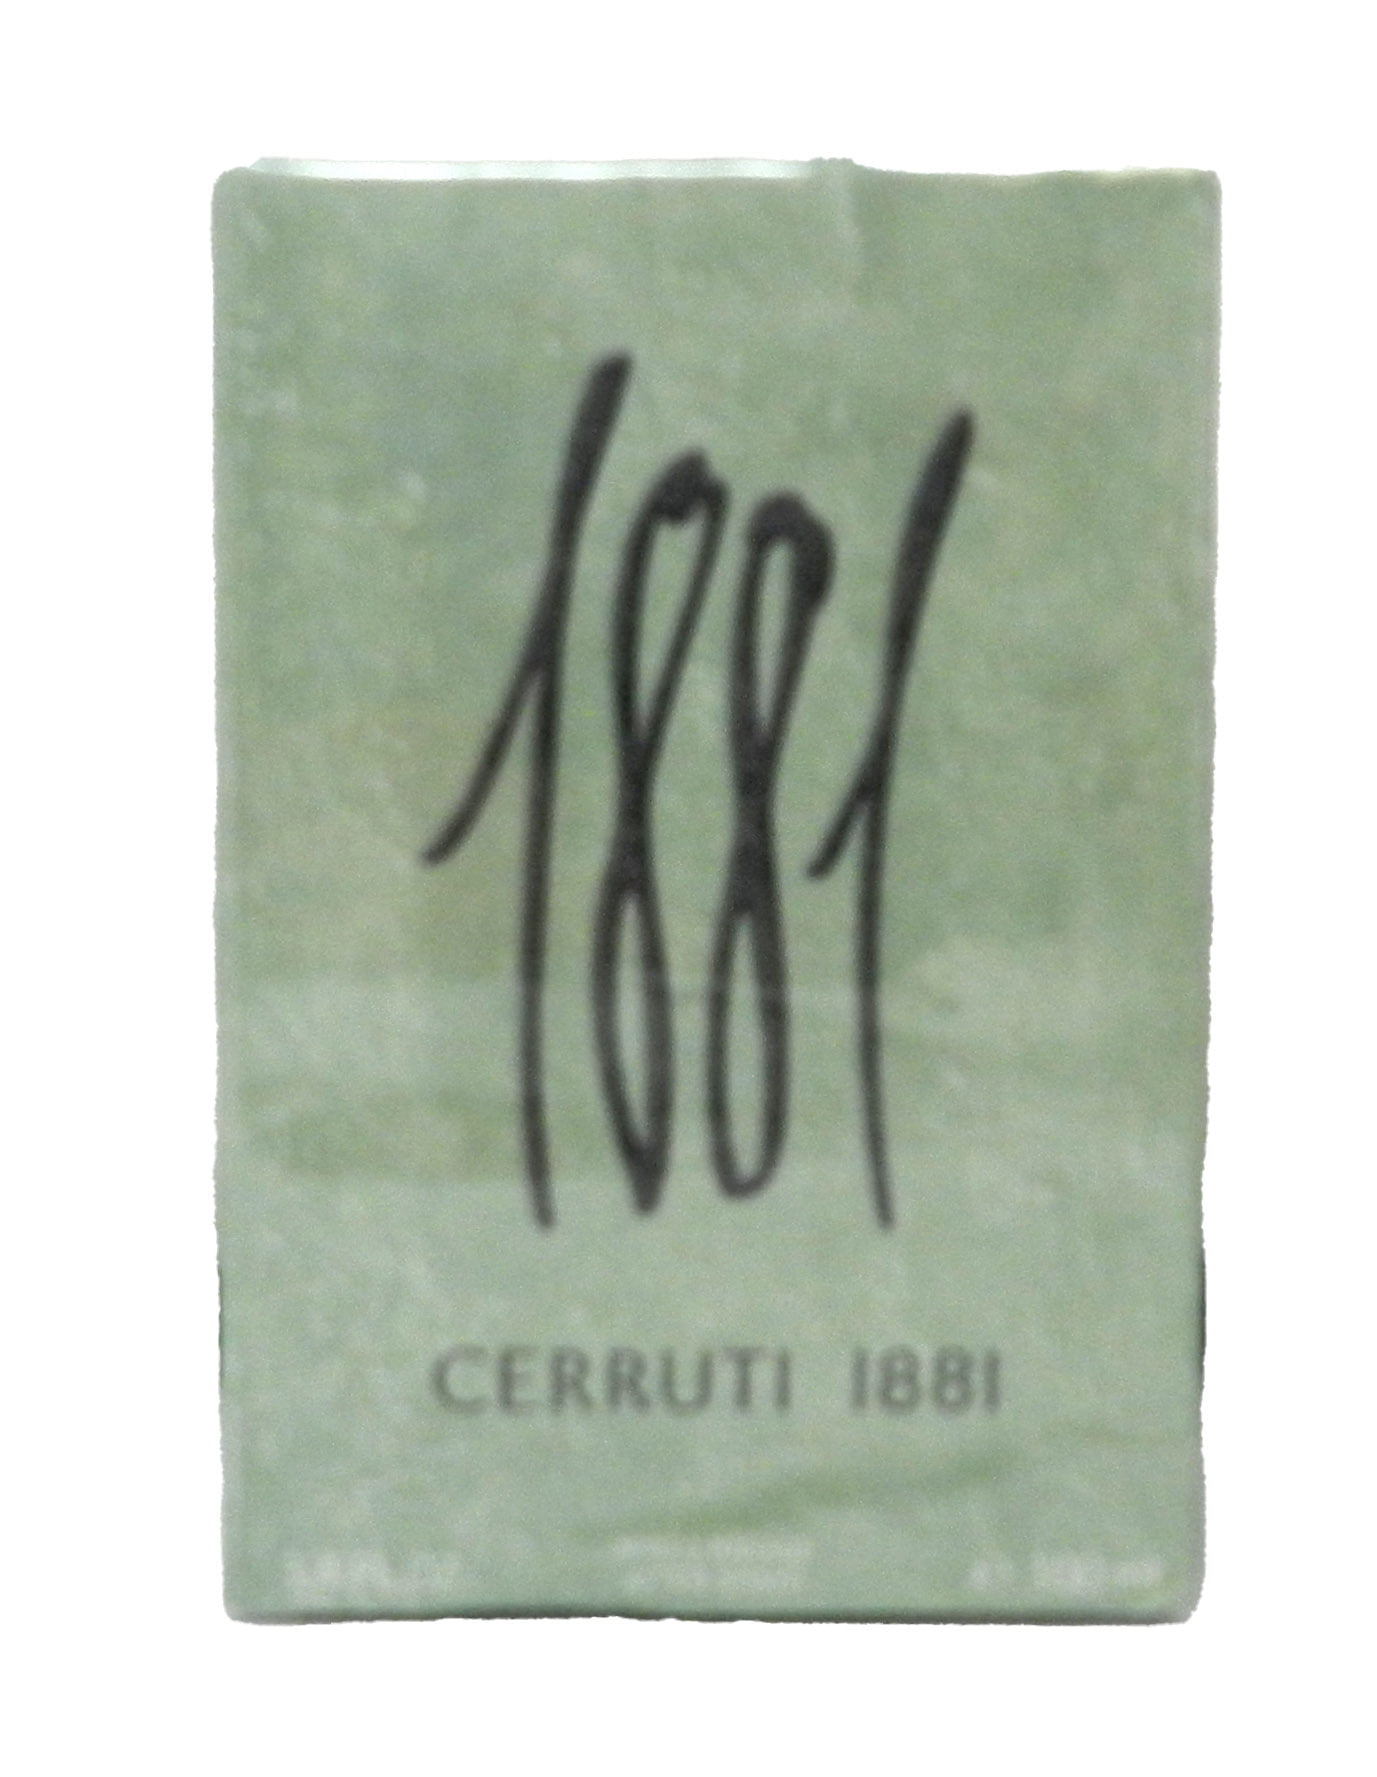 Cerruti 1881 After Shave Splash For Men 3.4 Ounces - Walmart.com